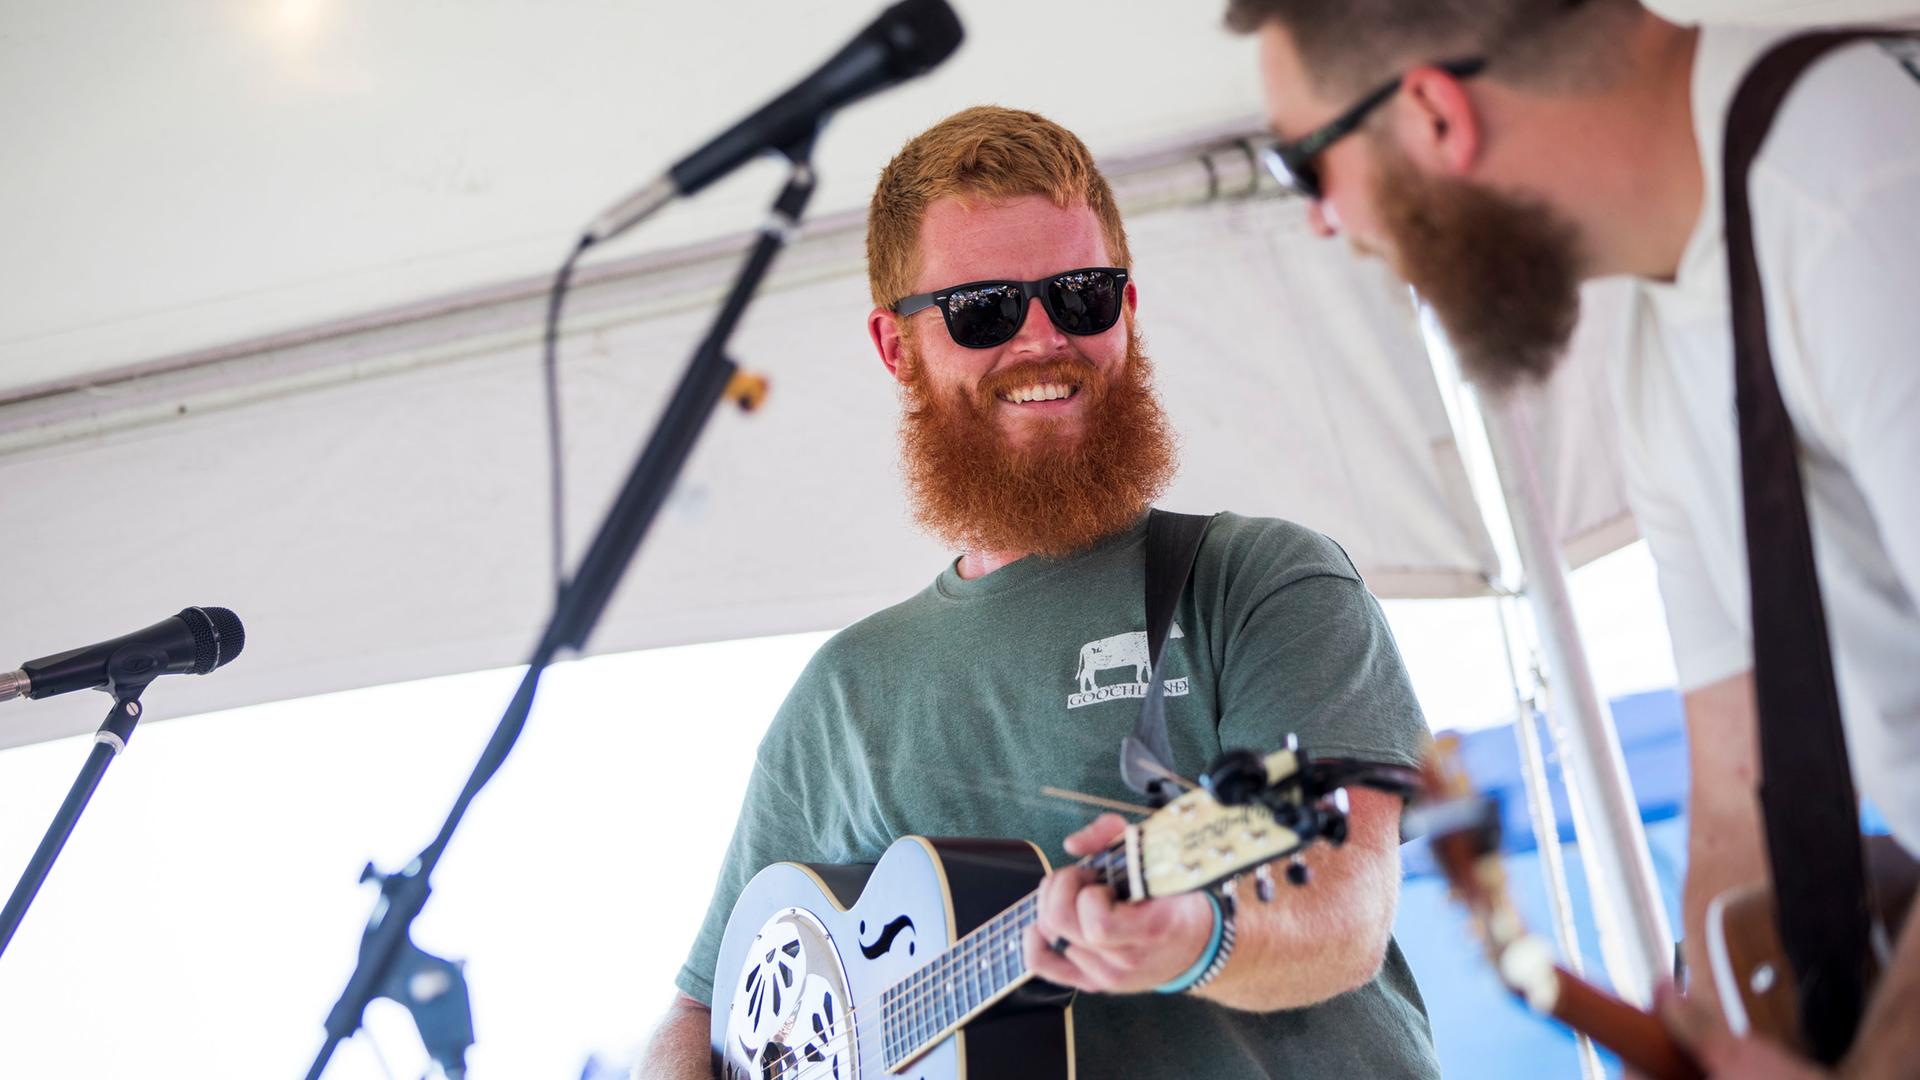 Ein Mann mit einem roten Vollbart trägt ein grünes T-Shirt und eine schwarze Sonnenbrille, er spielt Gitarre und schaut lächelnd zu einem Mitmusiker: Es handelt sich um Oliver Anthony bei einem Auftritt in Moyock in North Carolina am 19. August 2023.